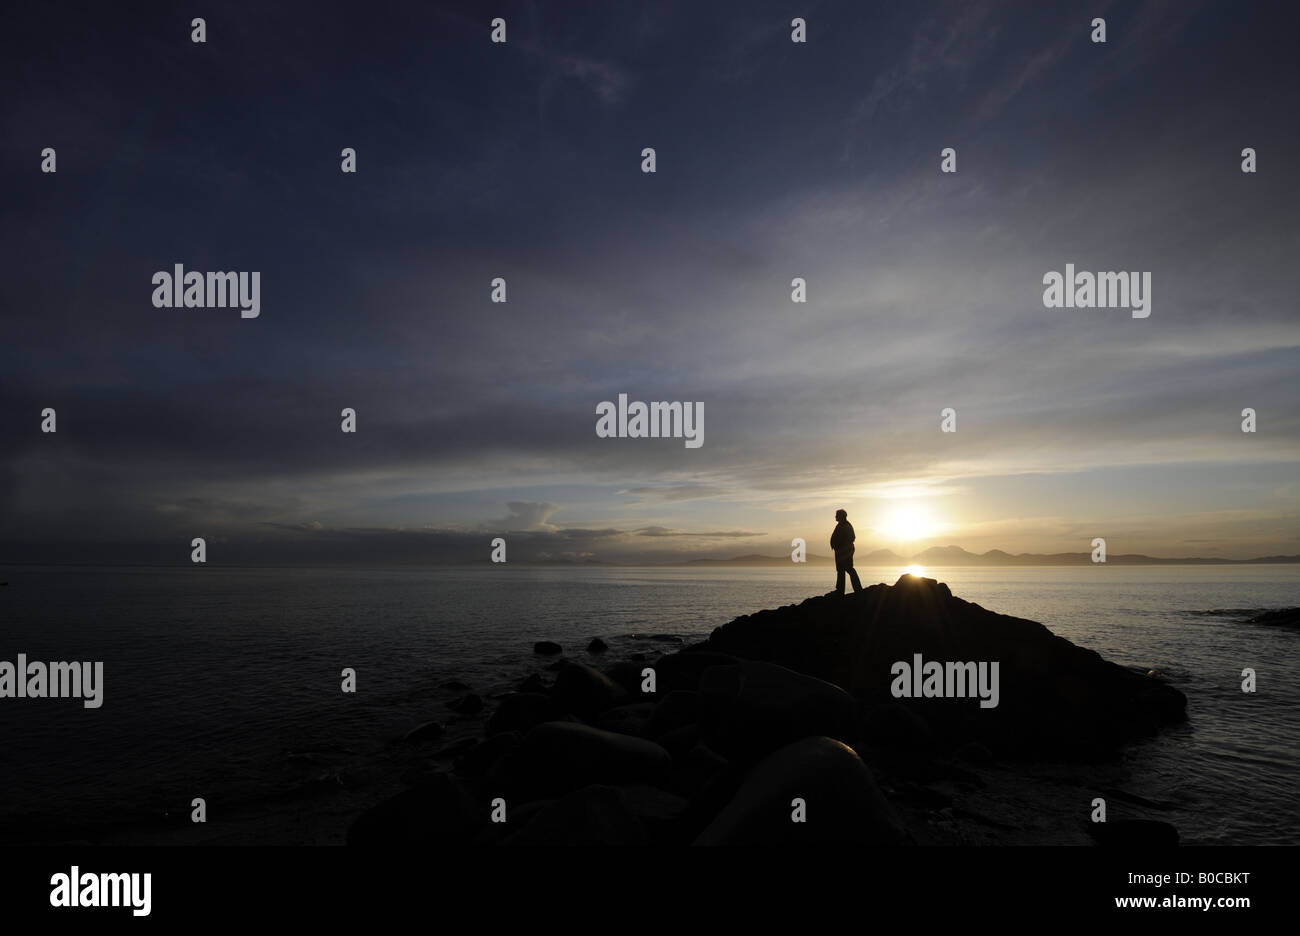 Une personne regarde un coucher de soleil spectaculaire SUR LA CÔTE DE KINTYRE À L'ENSEMBLE DE L'ÎLE DE JURA, Ecosse, Royaume-Uni. Banque D'Images